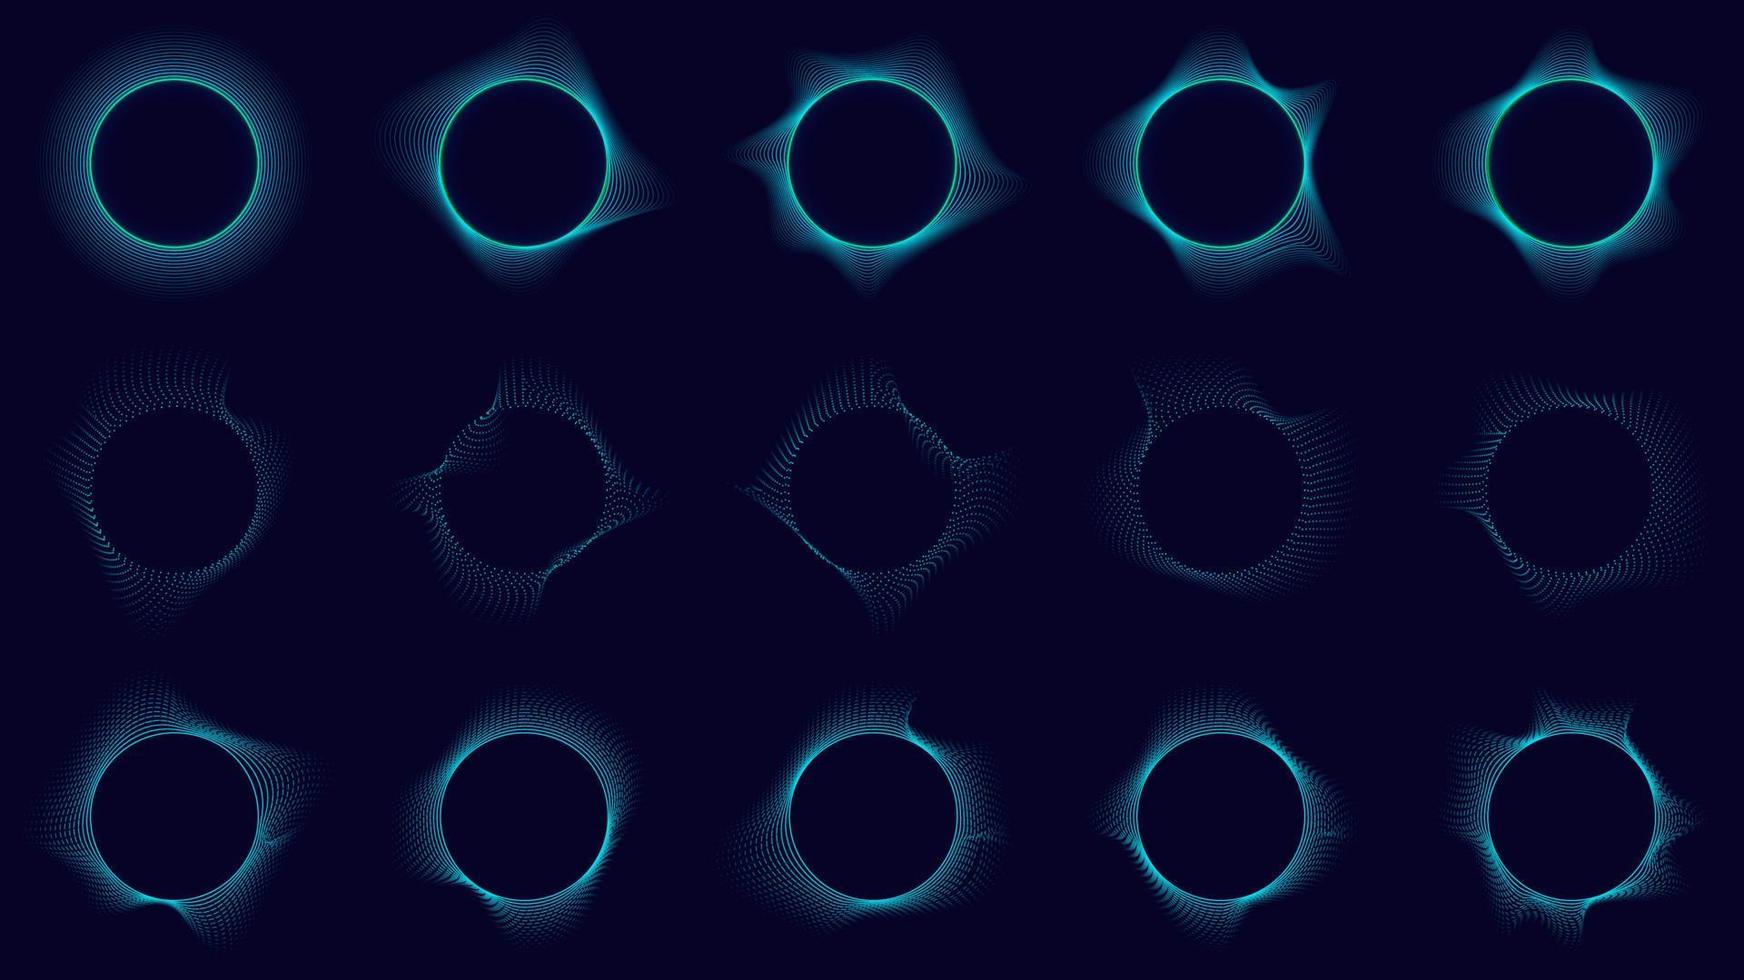 satz von technologie abstrcat blaue kreise elemente wellenlinien auf dunklem hintergrund vektor